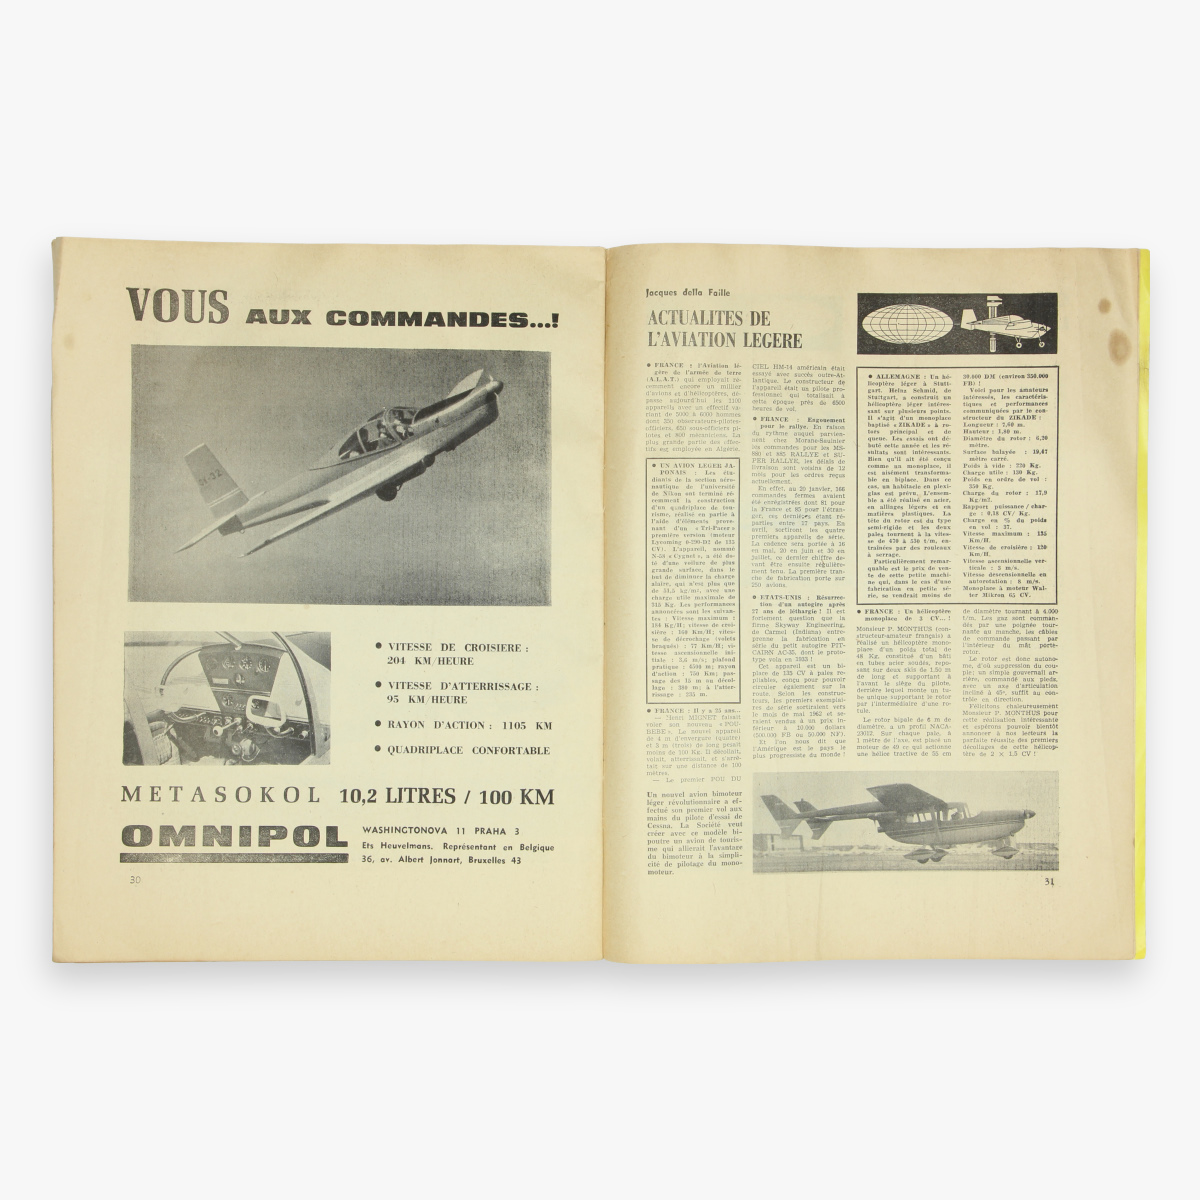 Afbeeldingen van luchtvaart mach magazine n°3 - 1961